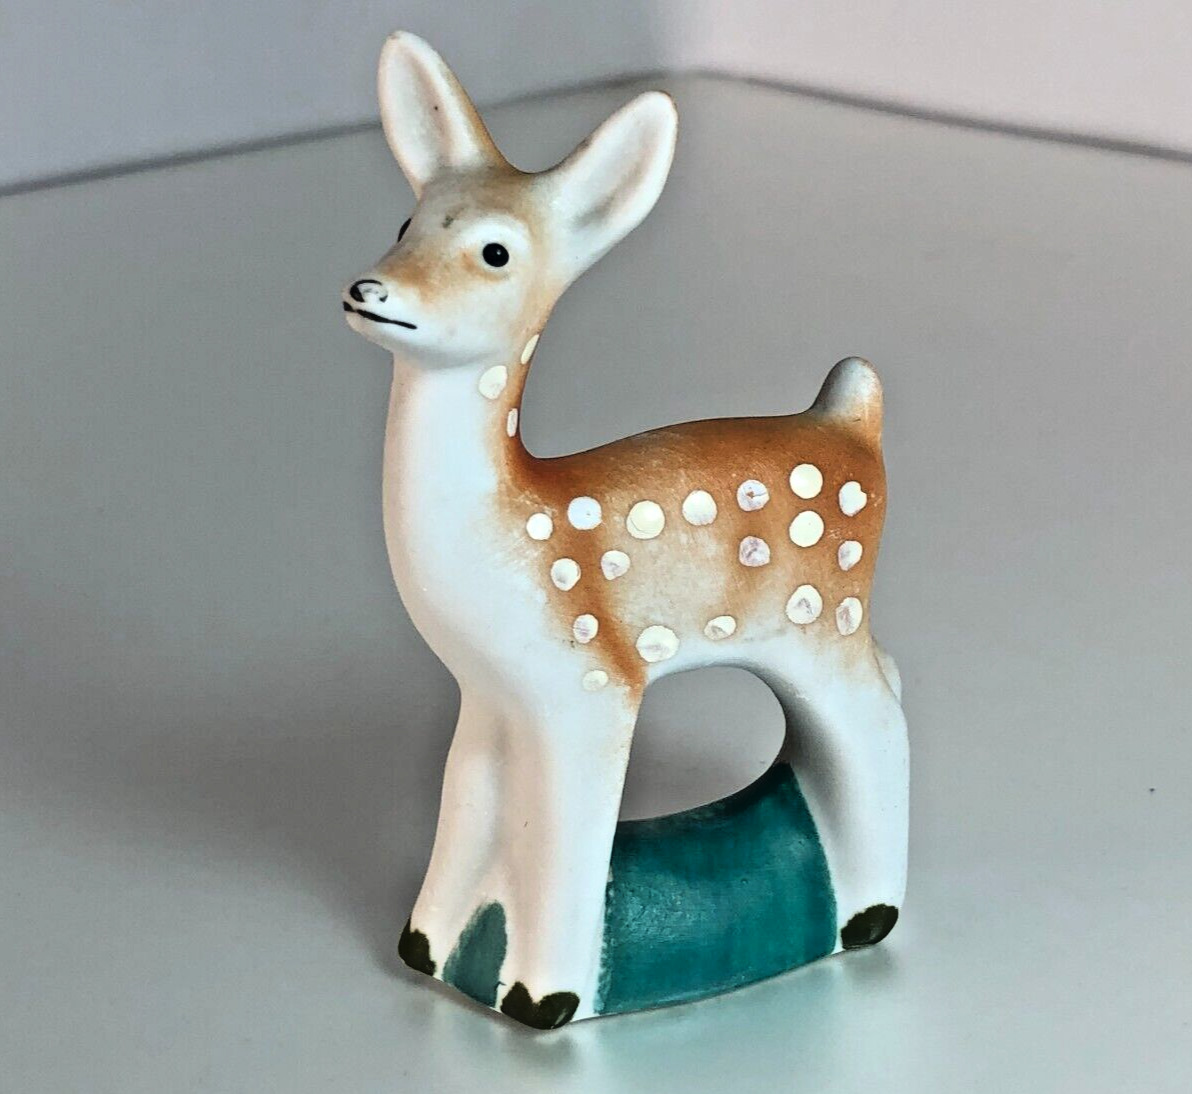 Vintage Soviet porcelain figurine of a bambi roe deer made in the USSR GDR